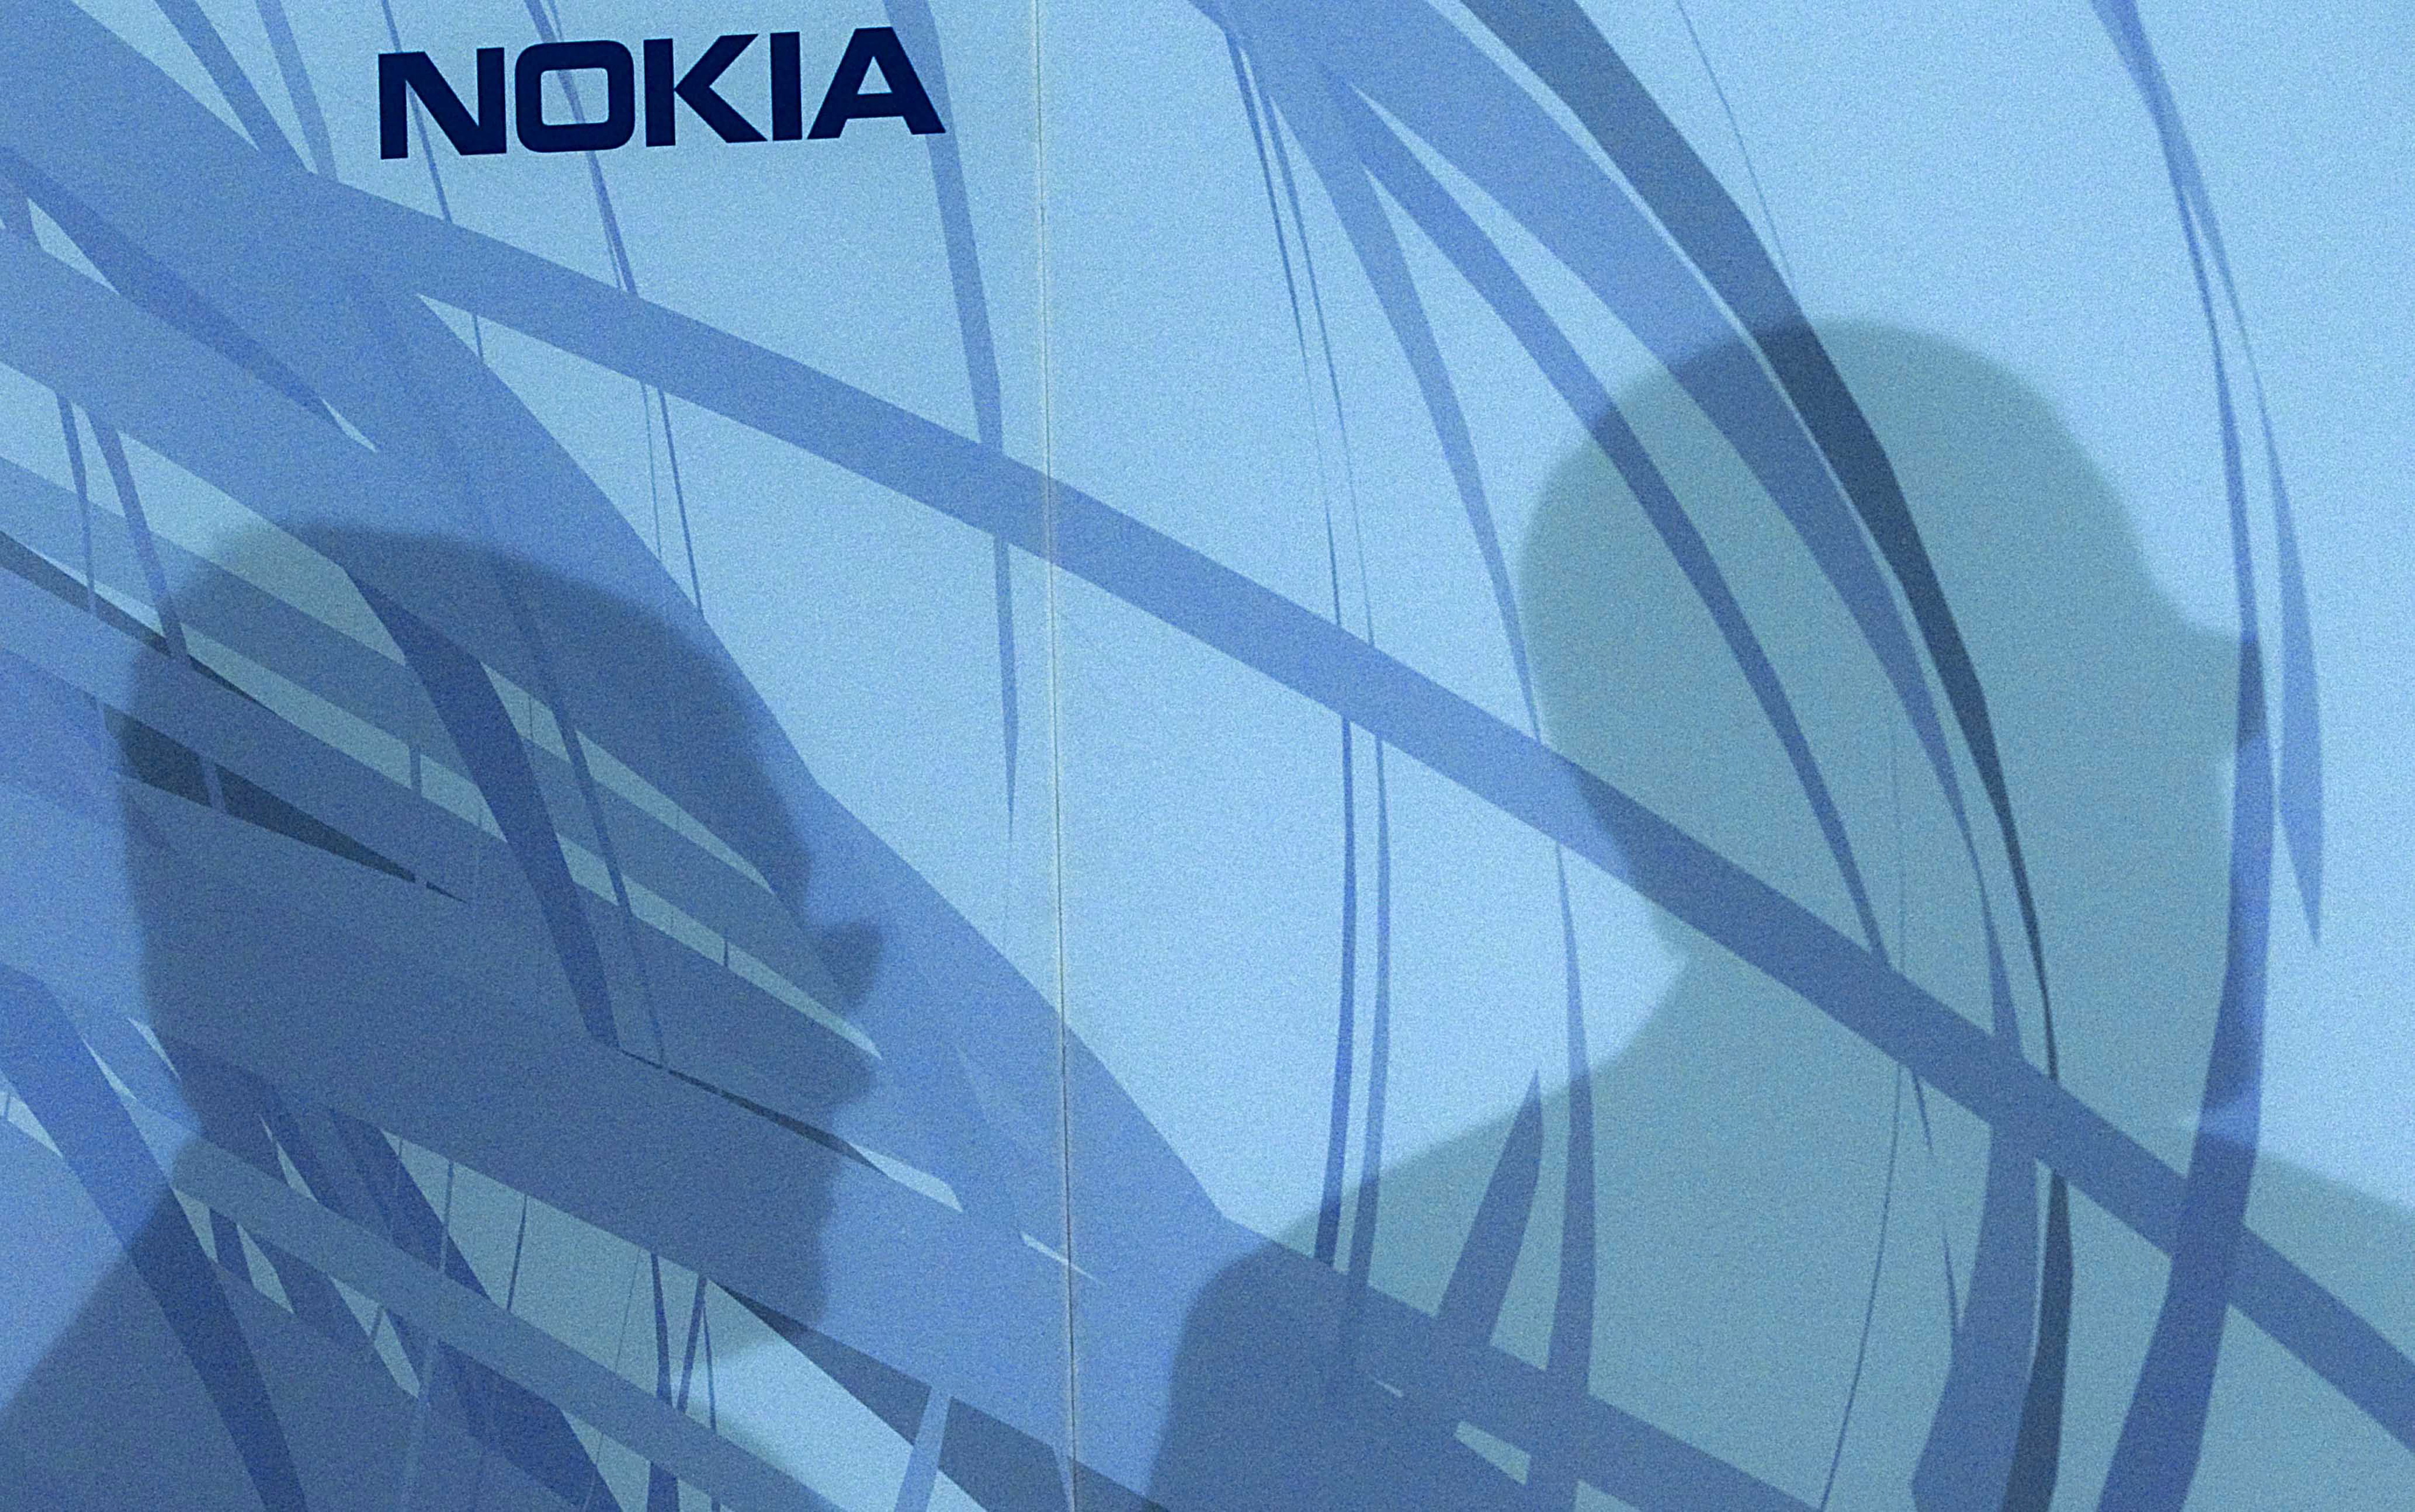 Met de verkoop van de telefoontak aan Microsoft breekt er een nieuw hoofdstuk aan voor Nokia. Kan het bedrijf dat ooit begon als molen voor houtpulp zich weer opnieuw uitvinden? Sinds Microsoft en Nokia twee jaar geleden besloten om samen te werken, speculeerden analisten al over een overname van het Finse bedrijf. Dinsdag was het zover. Microsoft maakte bekend dat het de divisie van Nokia die mobiele apparaten maakt overneemt voor 3,79 miljard euro. Telefoons met een Nokia-logo zullen niet helemaal verdwijnen. Microsoft heeft een licentieovereenkomst gesloten met de Finnen, waardoor het tien jaar lang simpele mobiele telefoons mag verkopen onder de Nokia-merknaam. Die zijn met name populair in opkomende landen. Maar nieuwe Nokia-smartphones zullen niet meer op de markt komen.